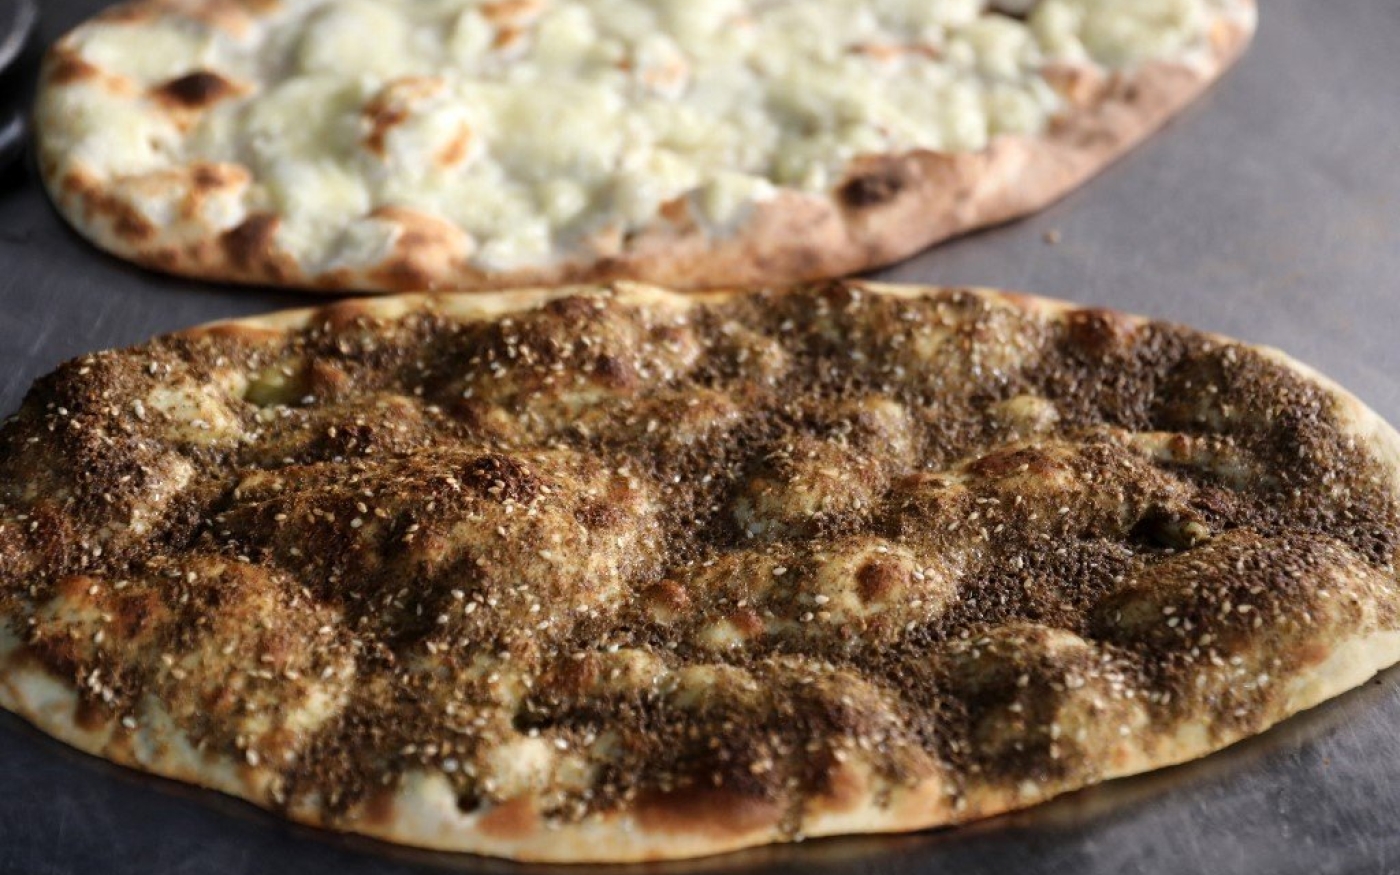 Les Palestiniens mélangent du thym et d’autres herbes et épices qu’ils dégustent sur du pain, ainsi qu’avec de l’huile d’olive et dans plein d’autres plats (AFP)